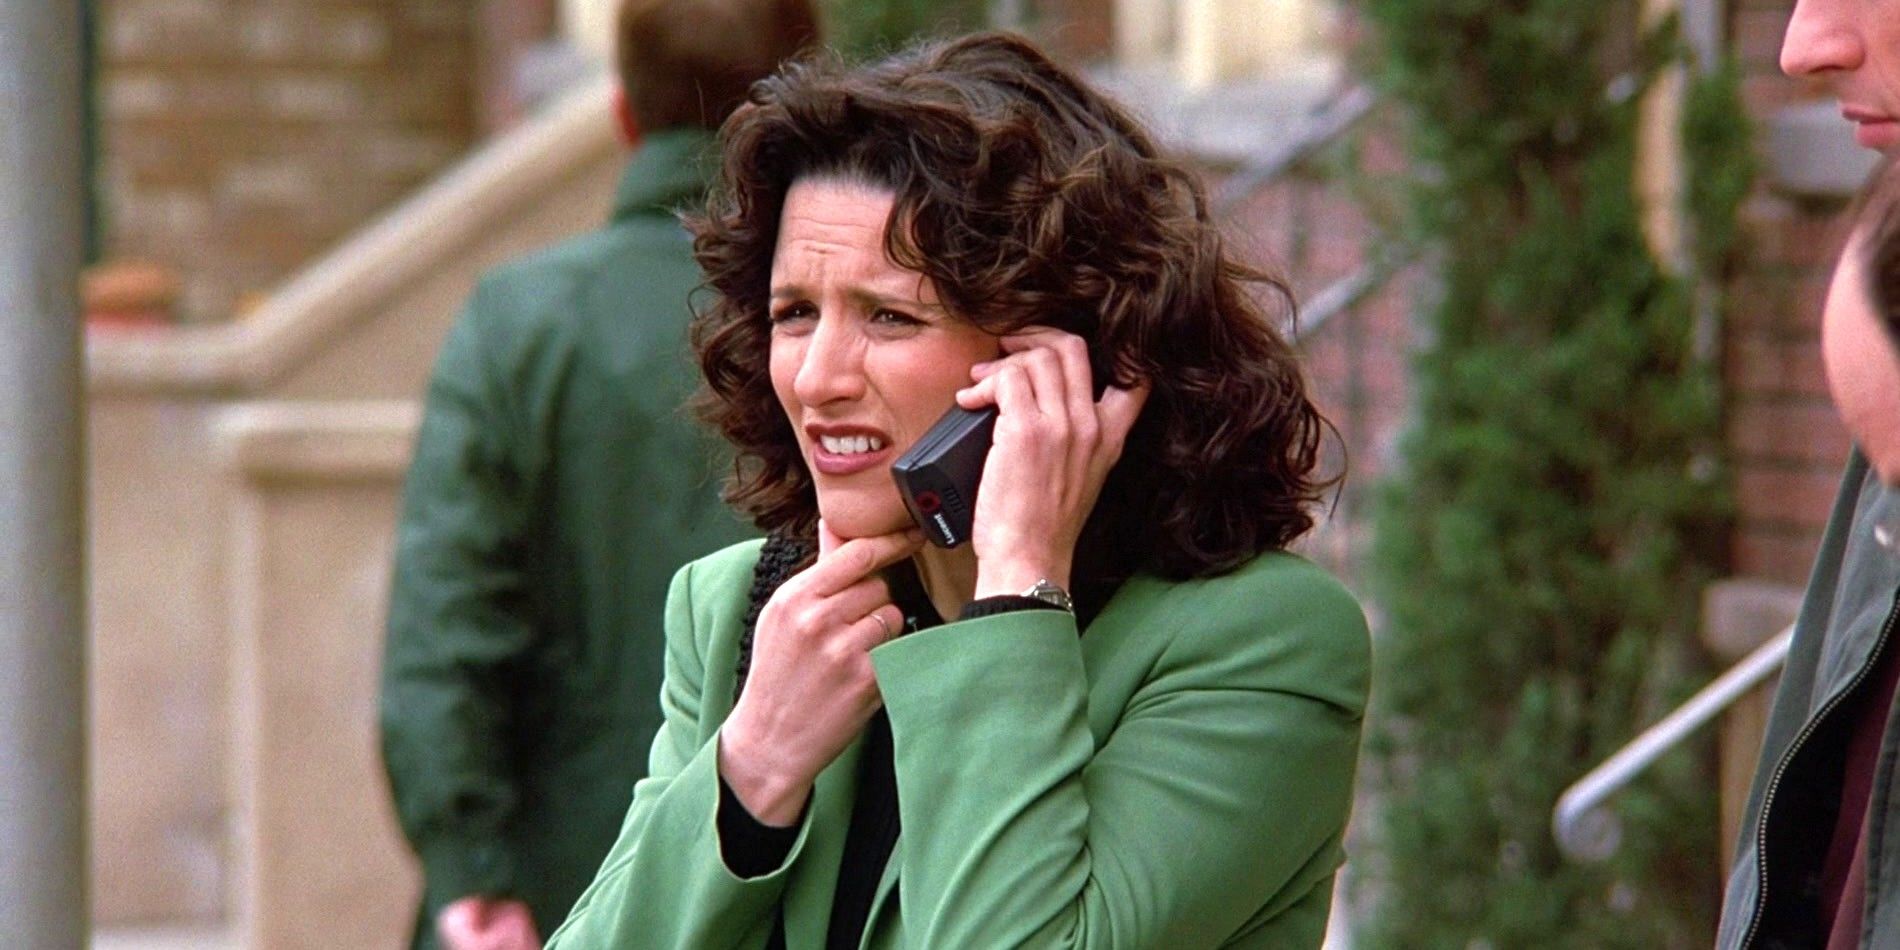 Elaine Benes in Seinfeld season 9